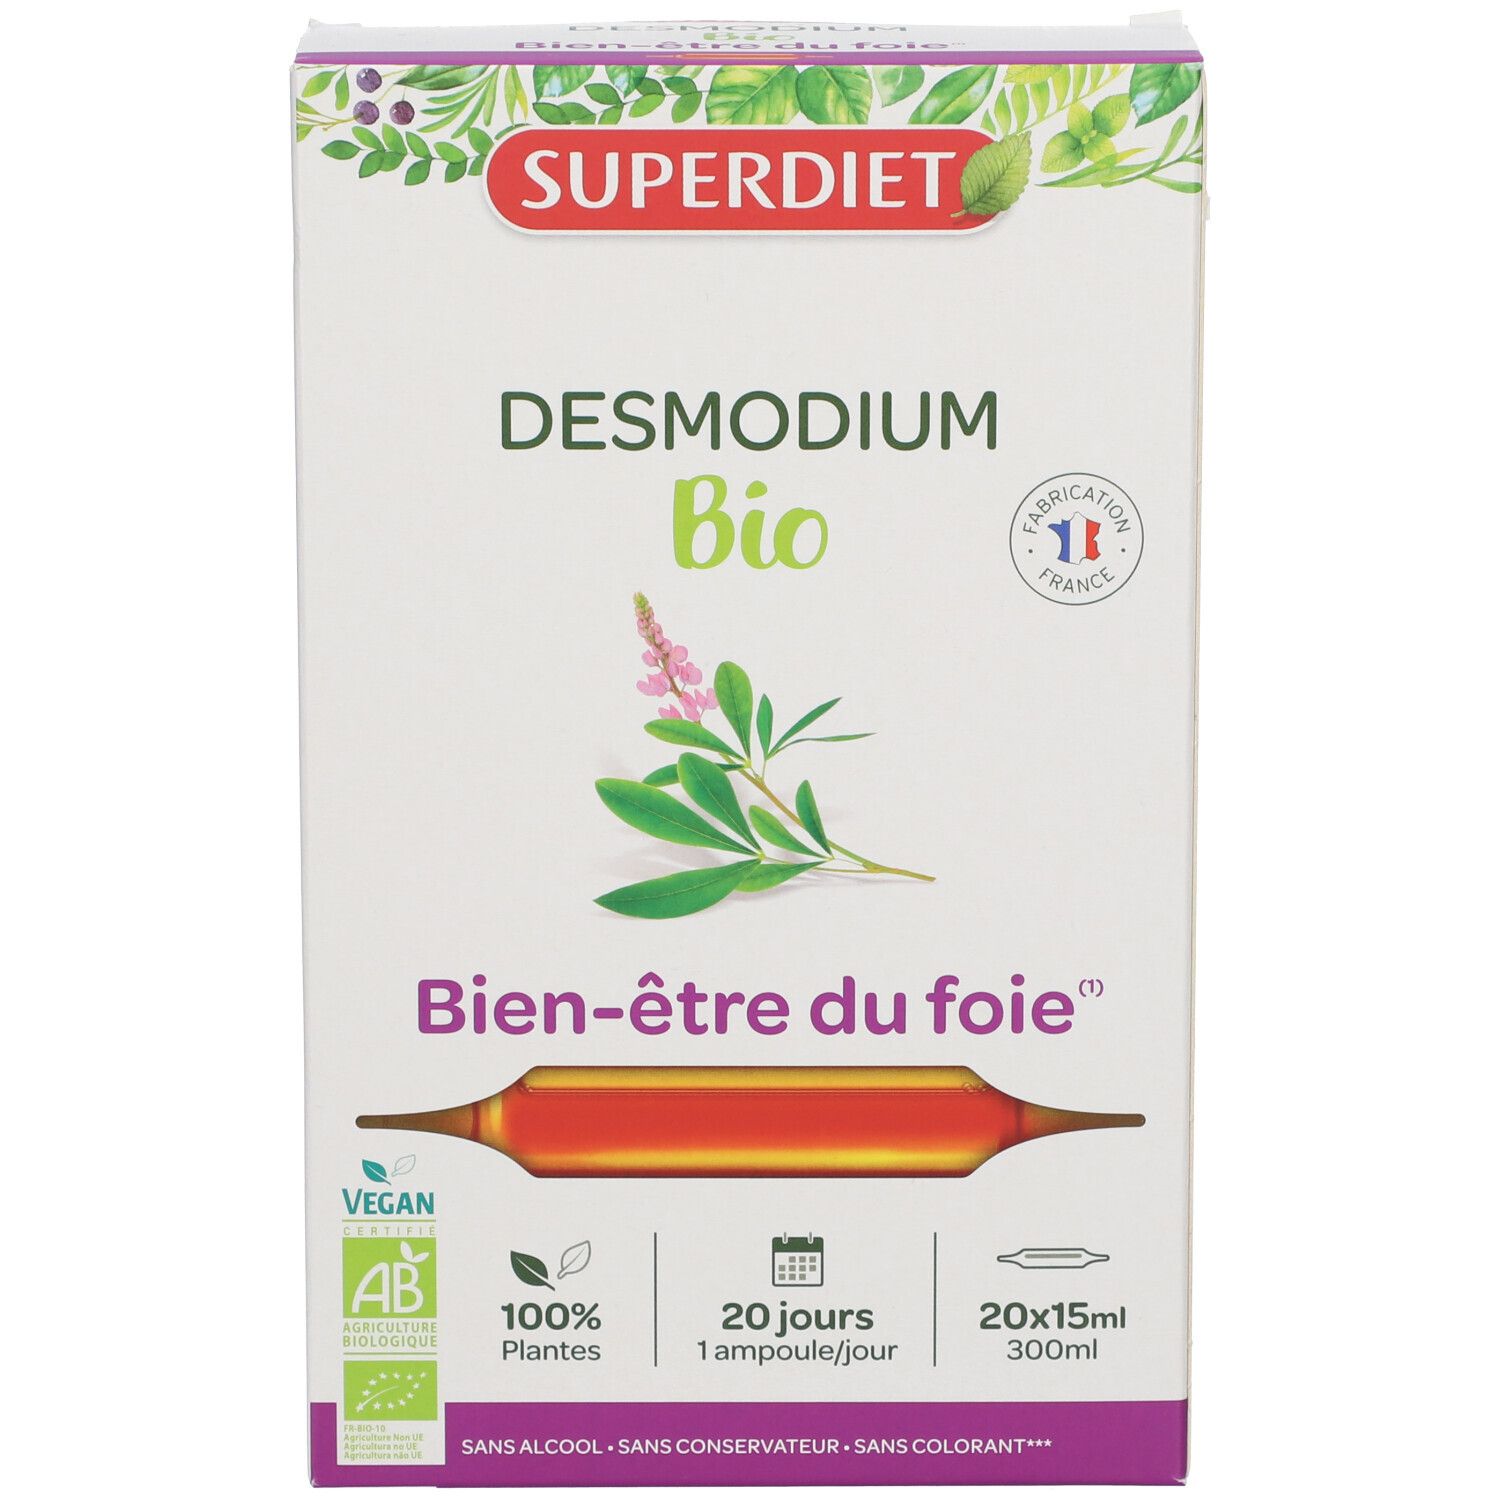 Super Diet Desmodium bio